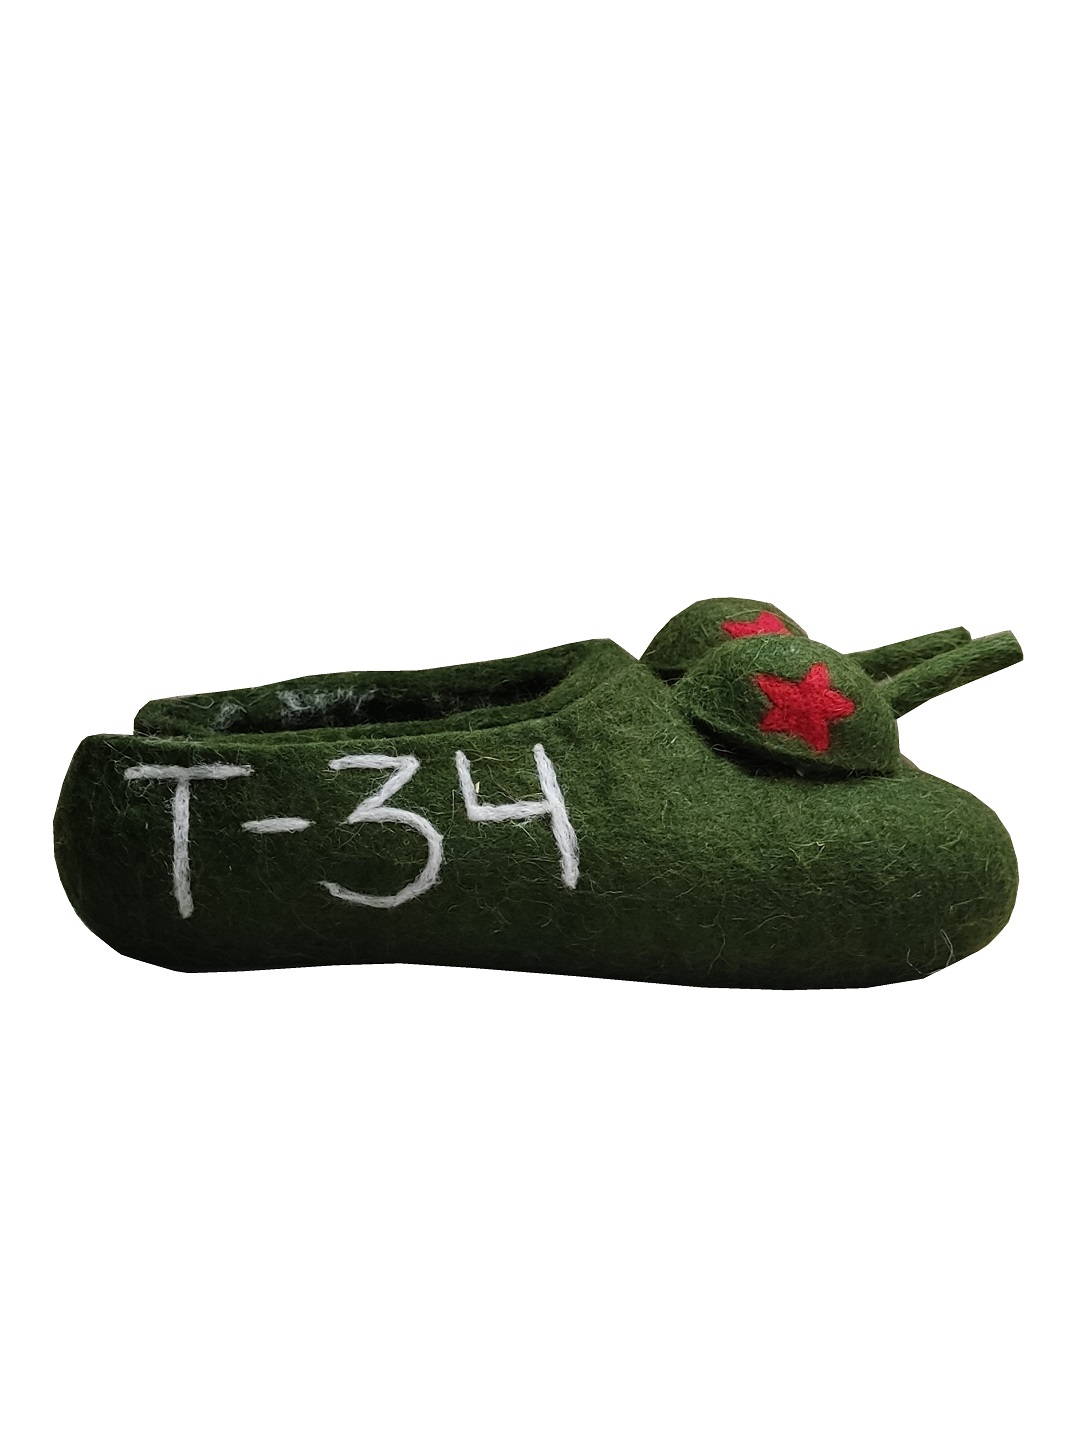 Женские войлочные тапочки "Танк Т-34"